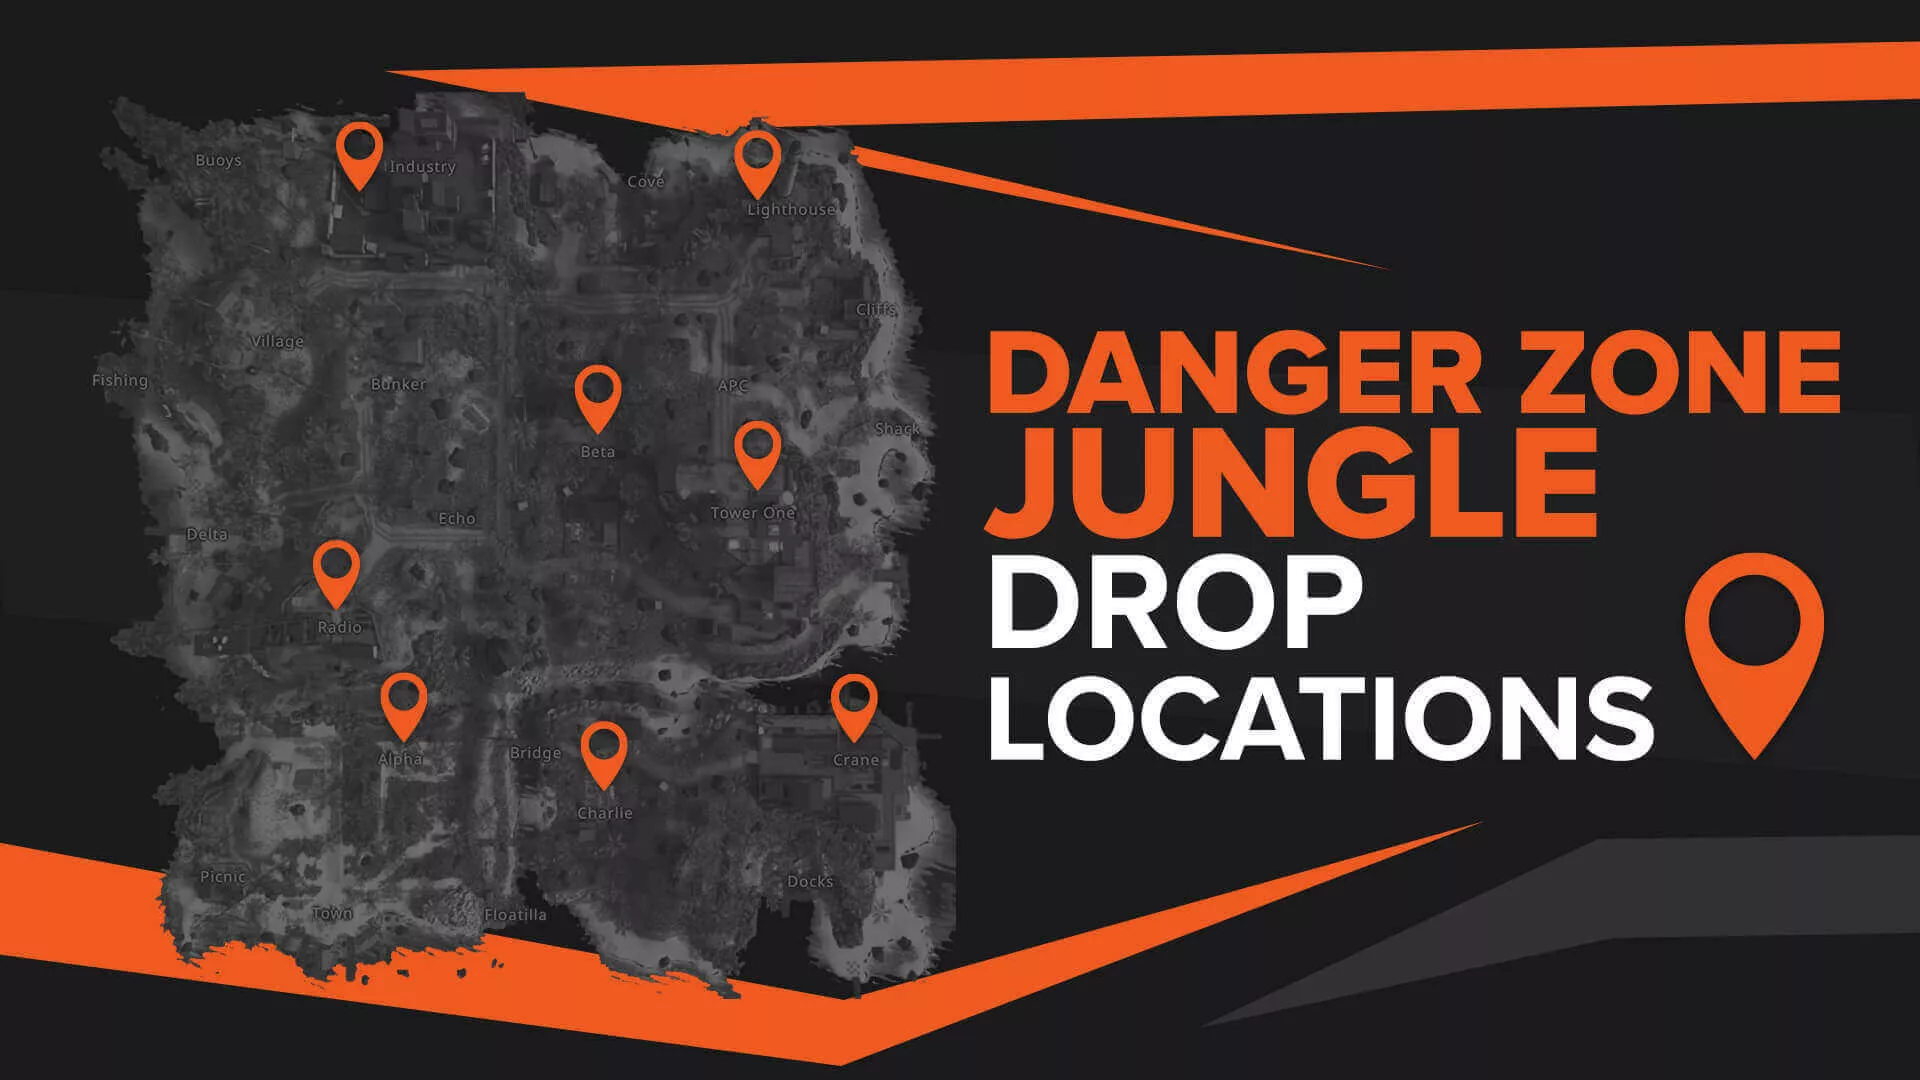 Best CS:GO Jungle Drop Locations in Danger Zone